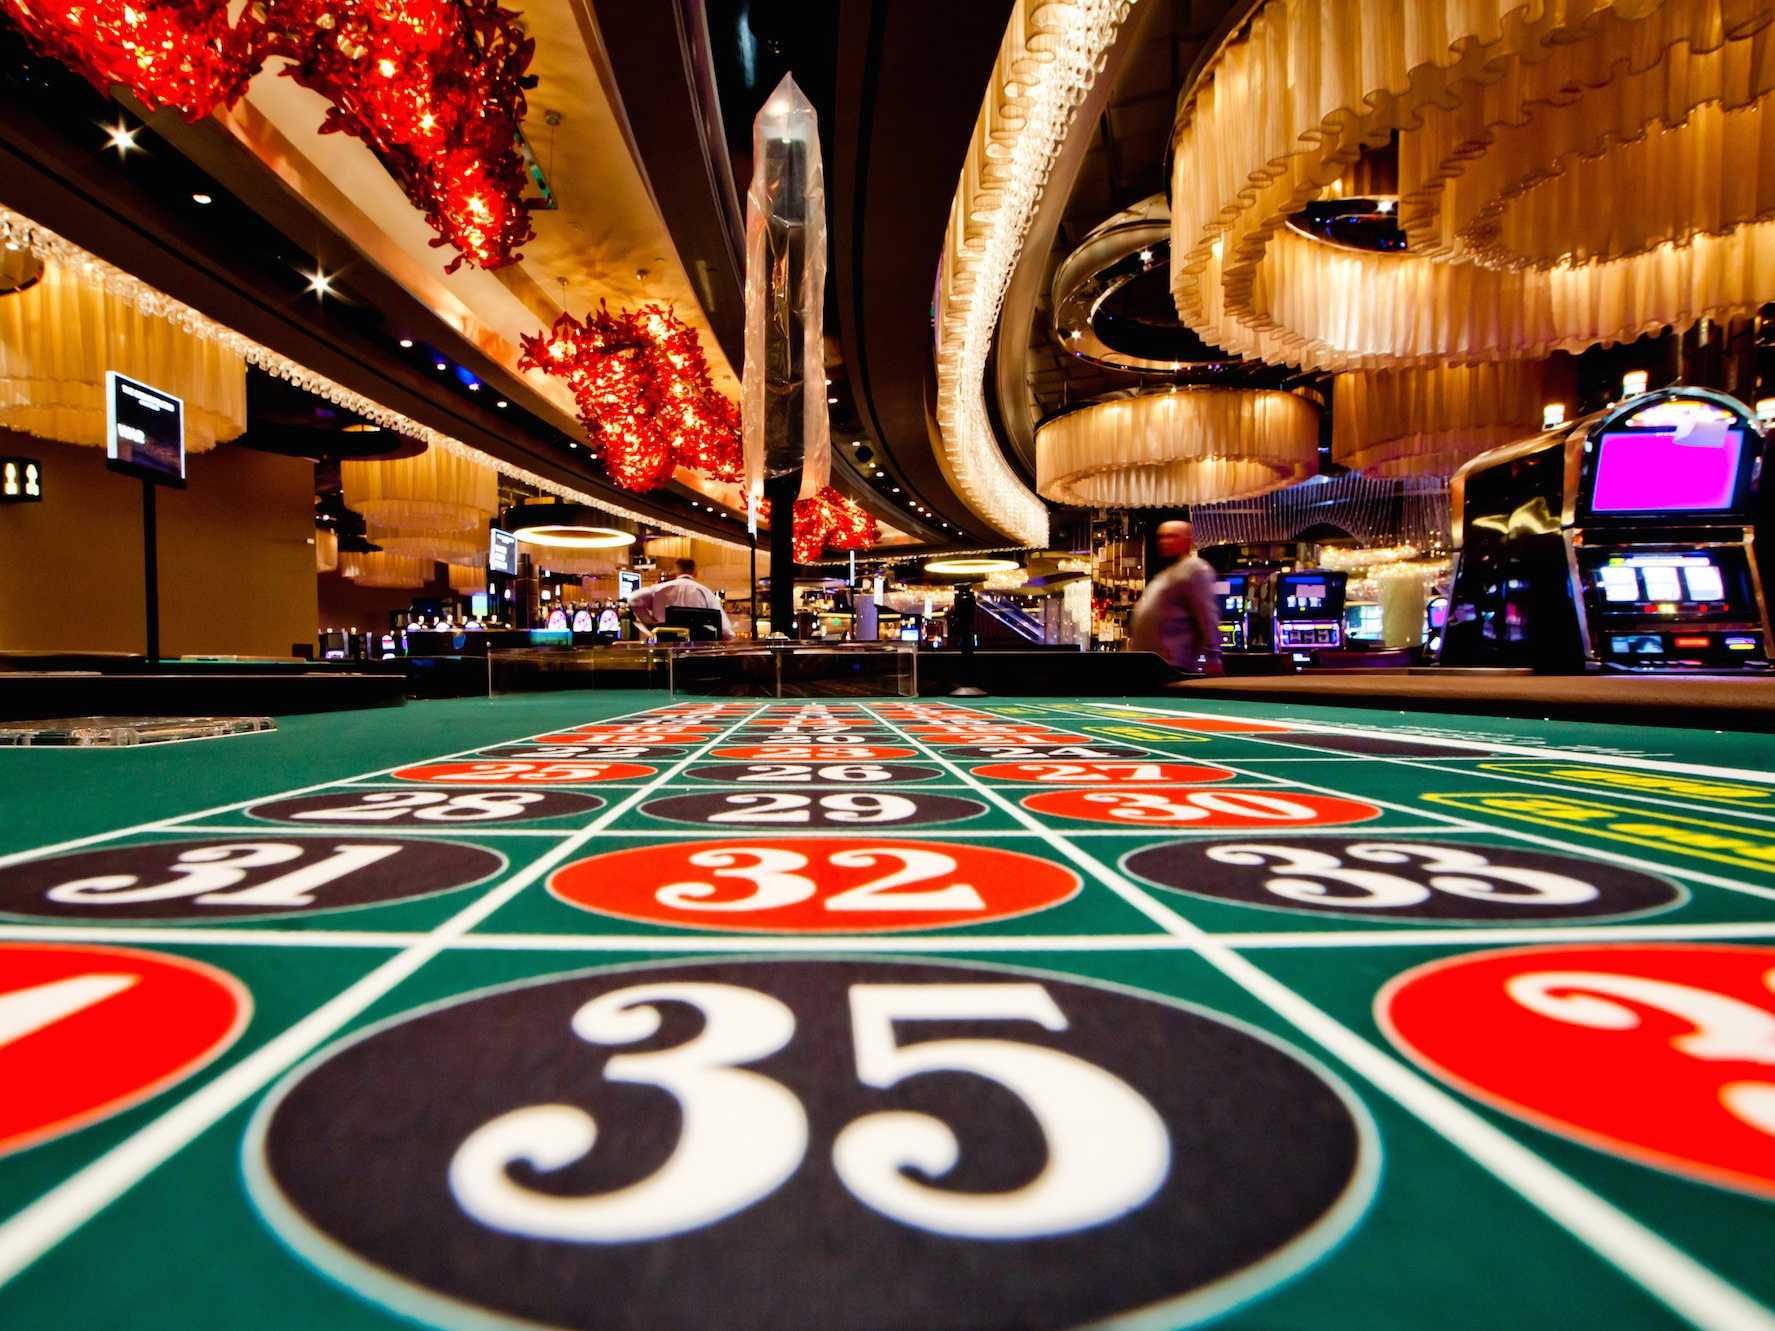 Jeux casino : un divertissement pas comme les autres